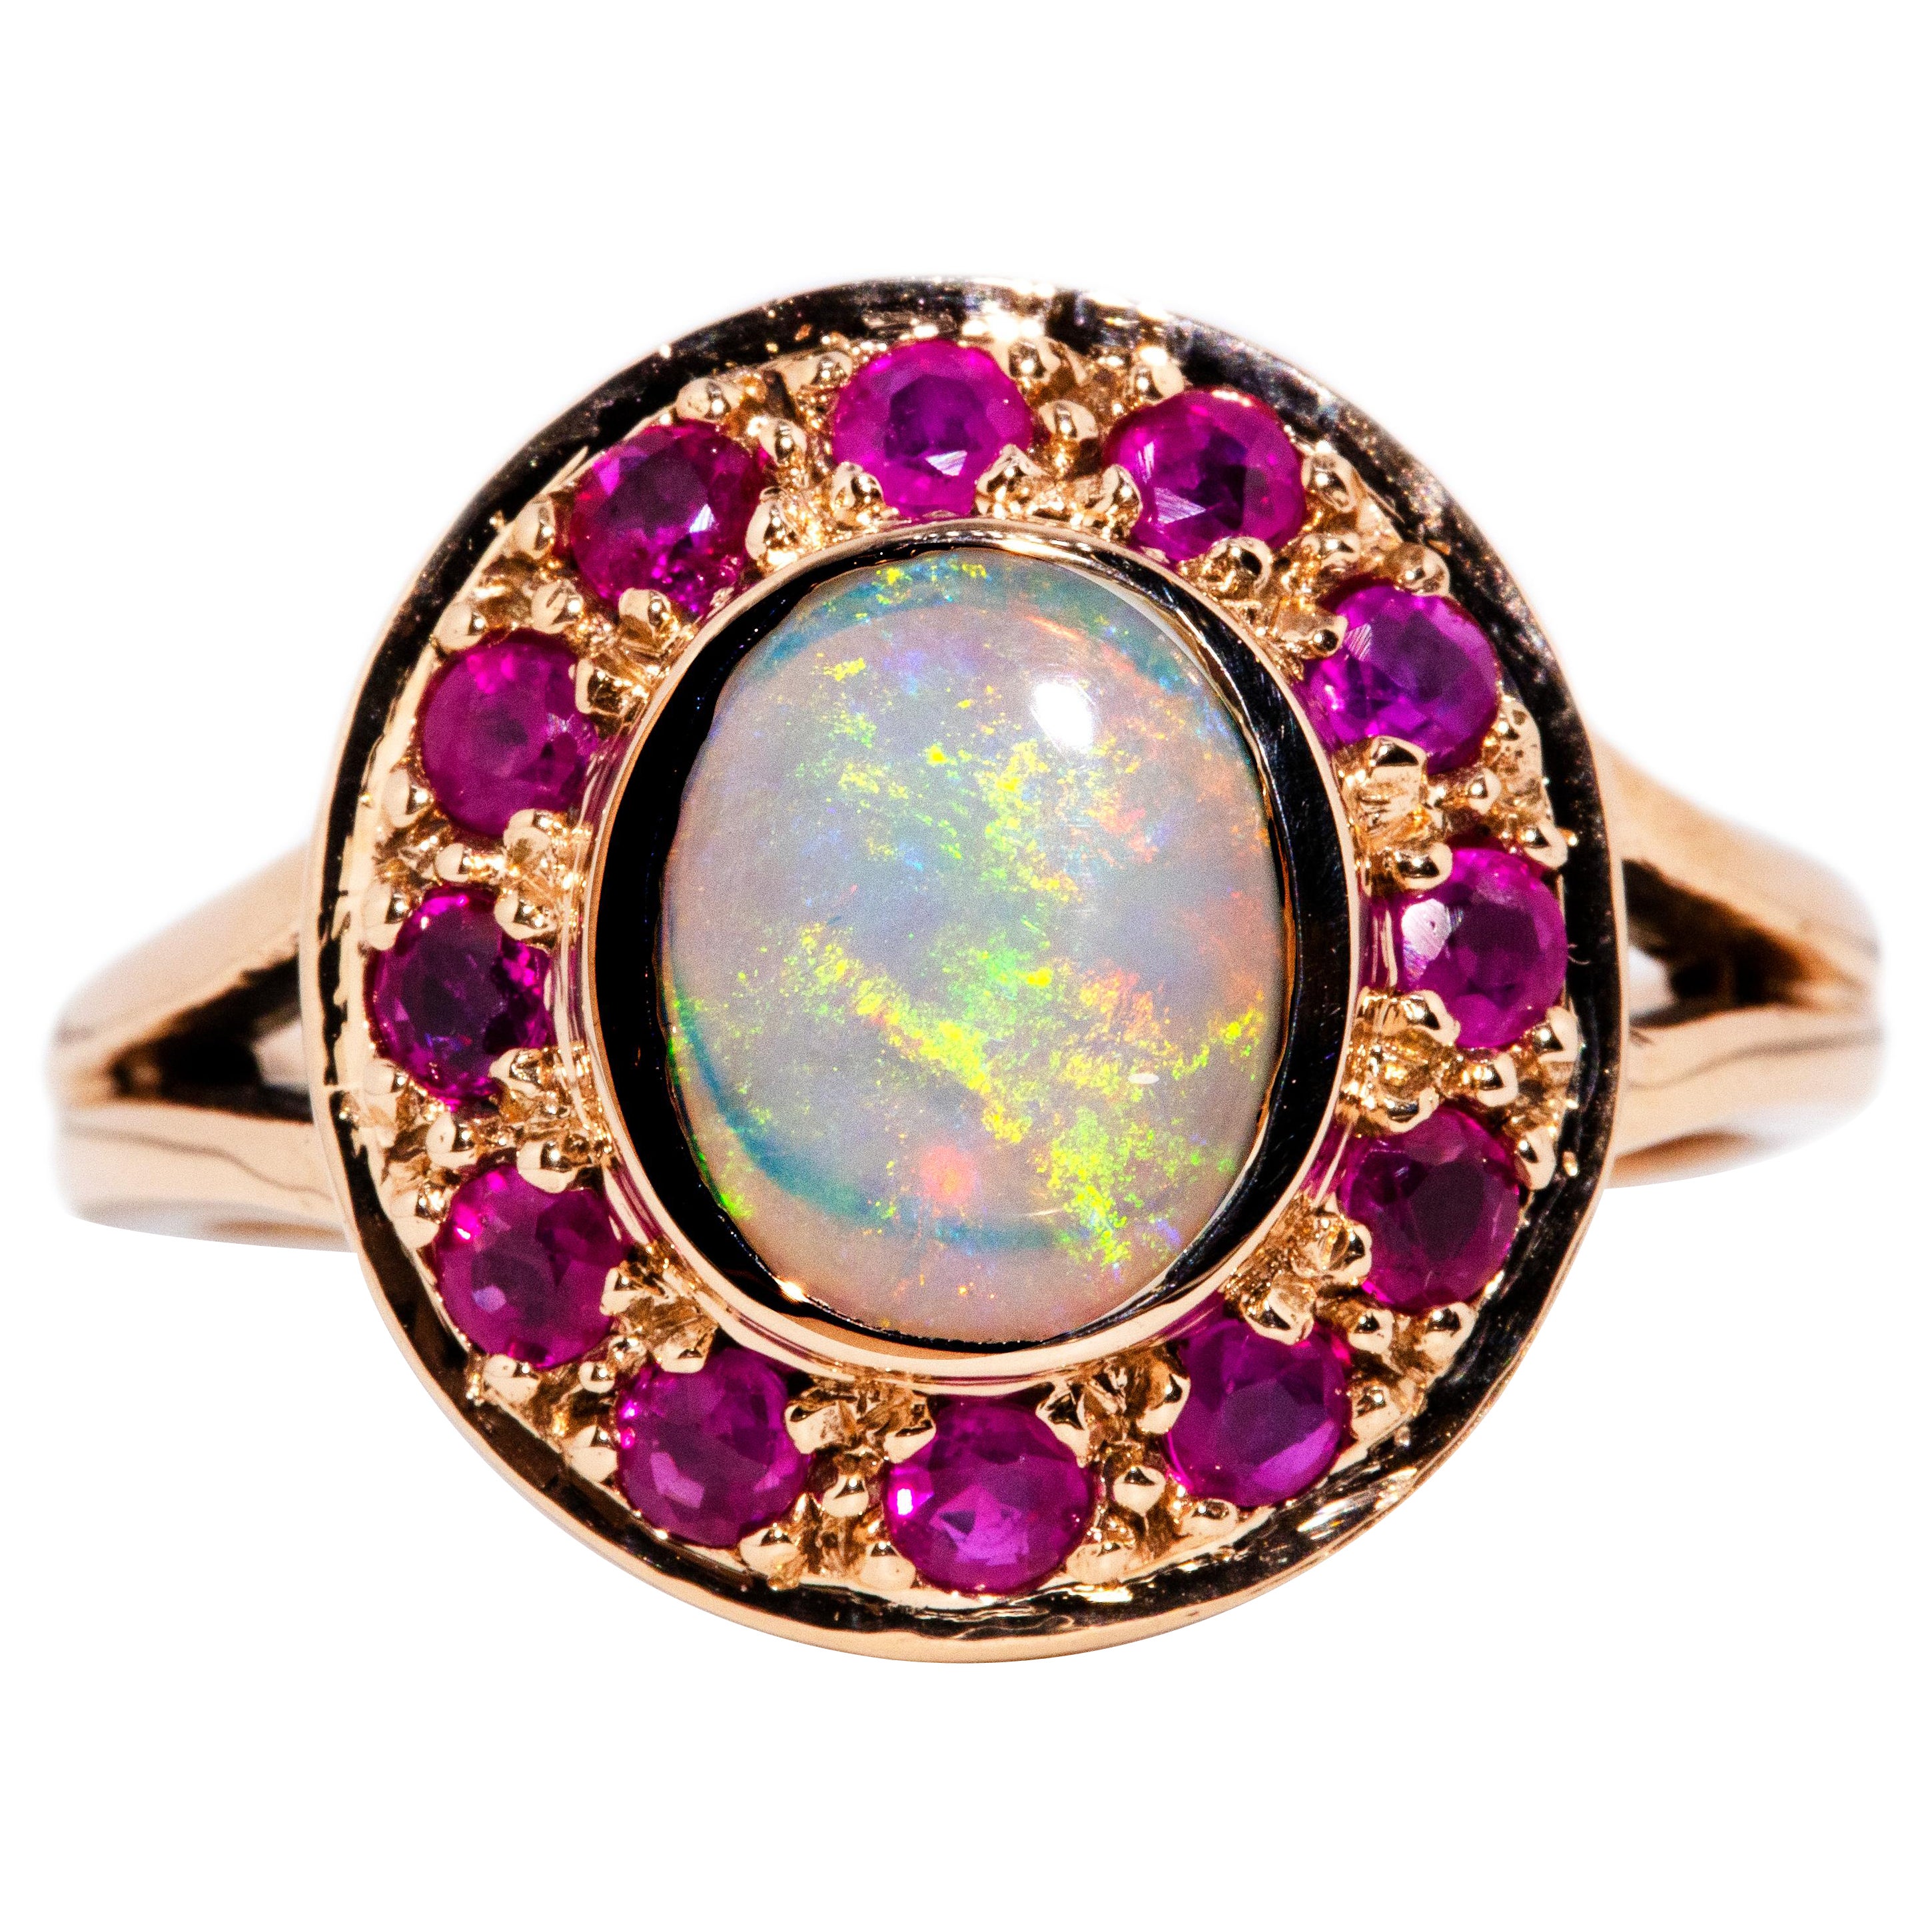 Vintage inspirierter Ring aus 9 Karat Gelbgold mit massivem Opal, Cabochon und lila-rotem Rubin